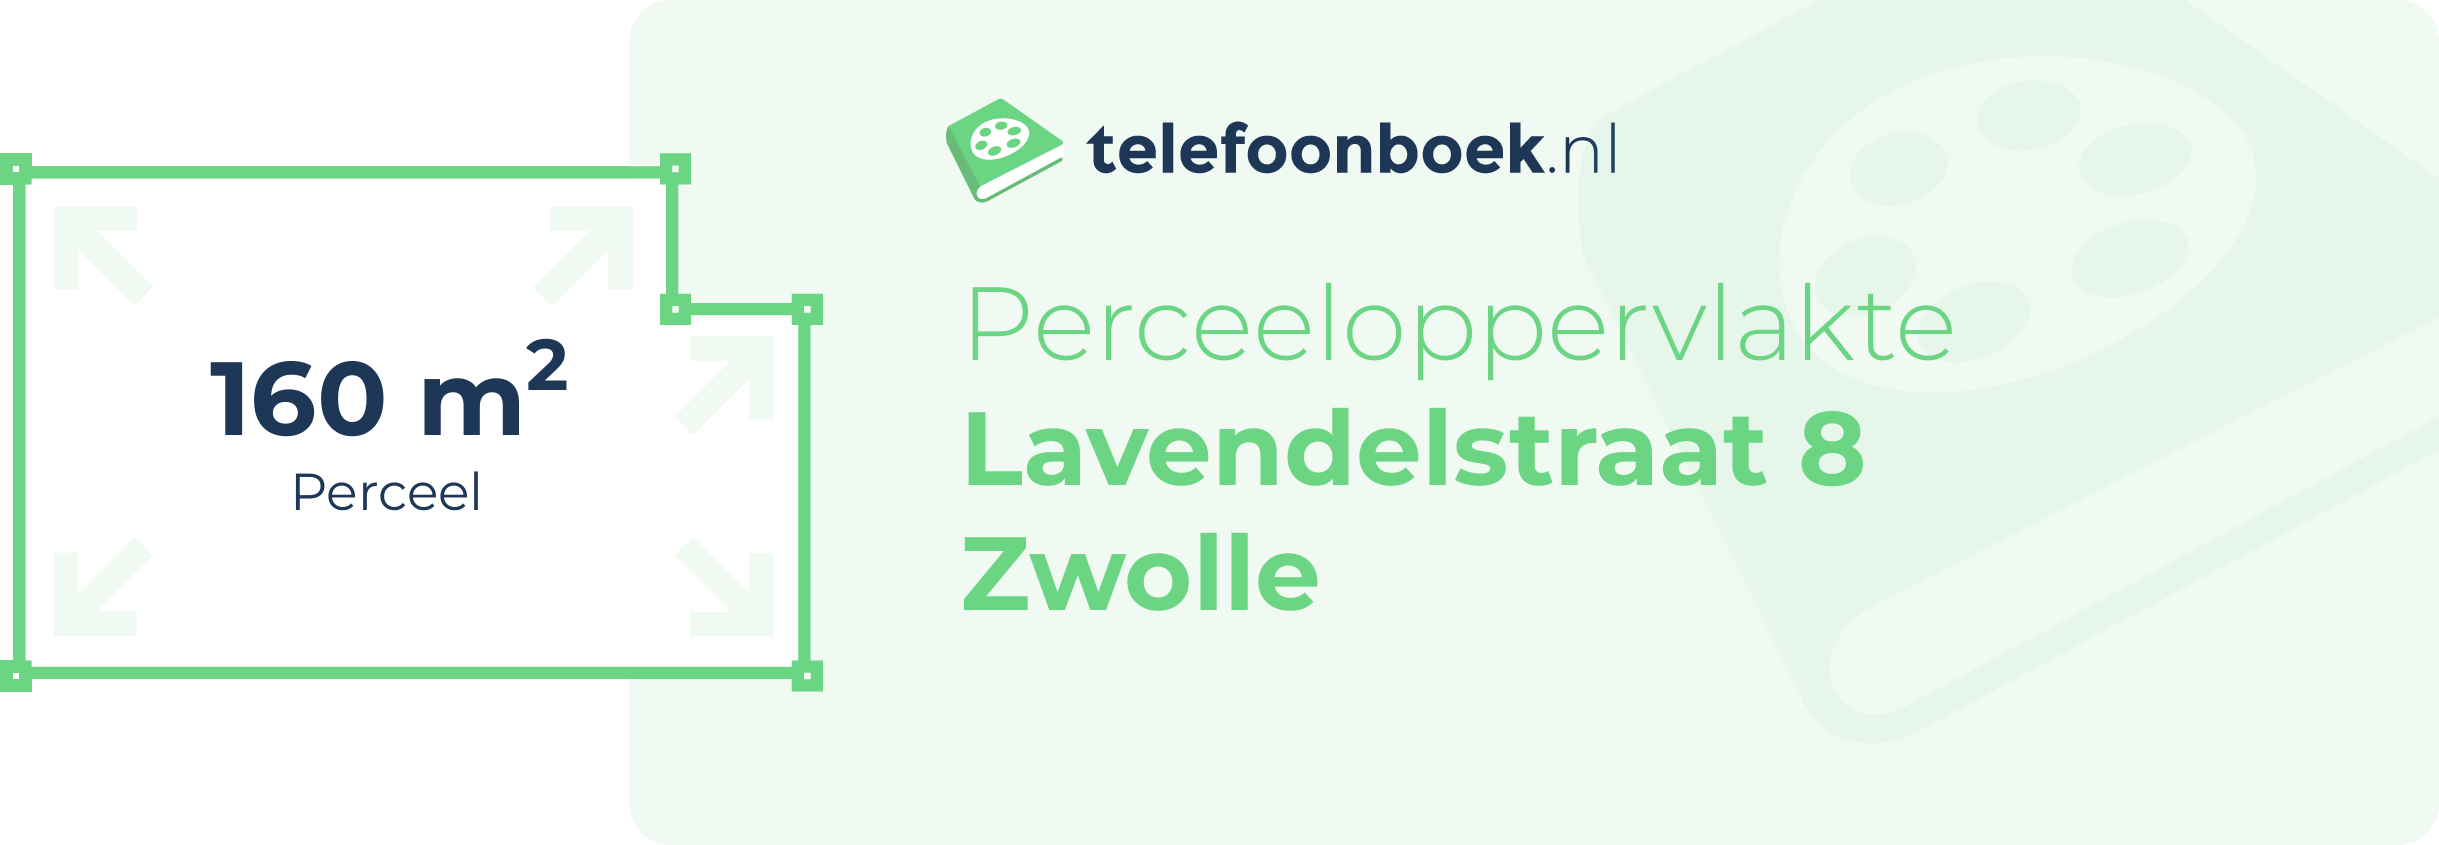 Perceeloppervlakte Lavendelstraat 8 Zwolle